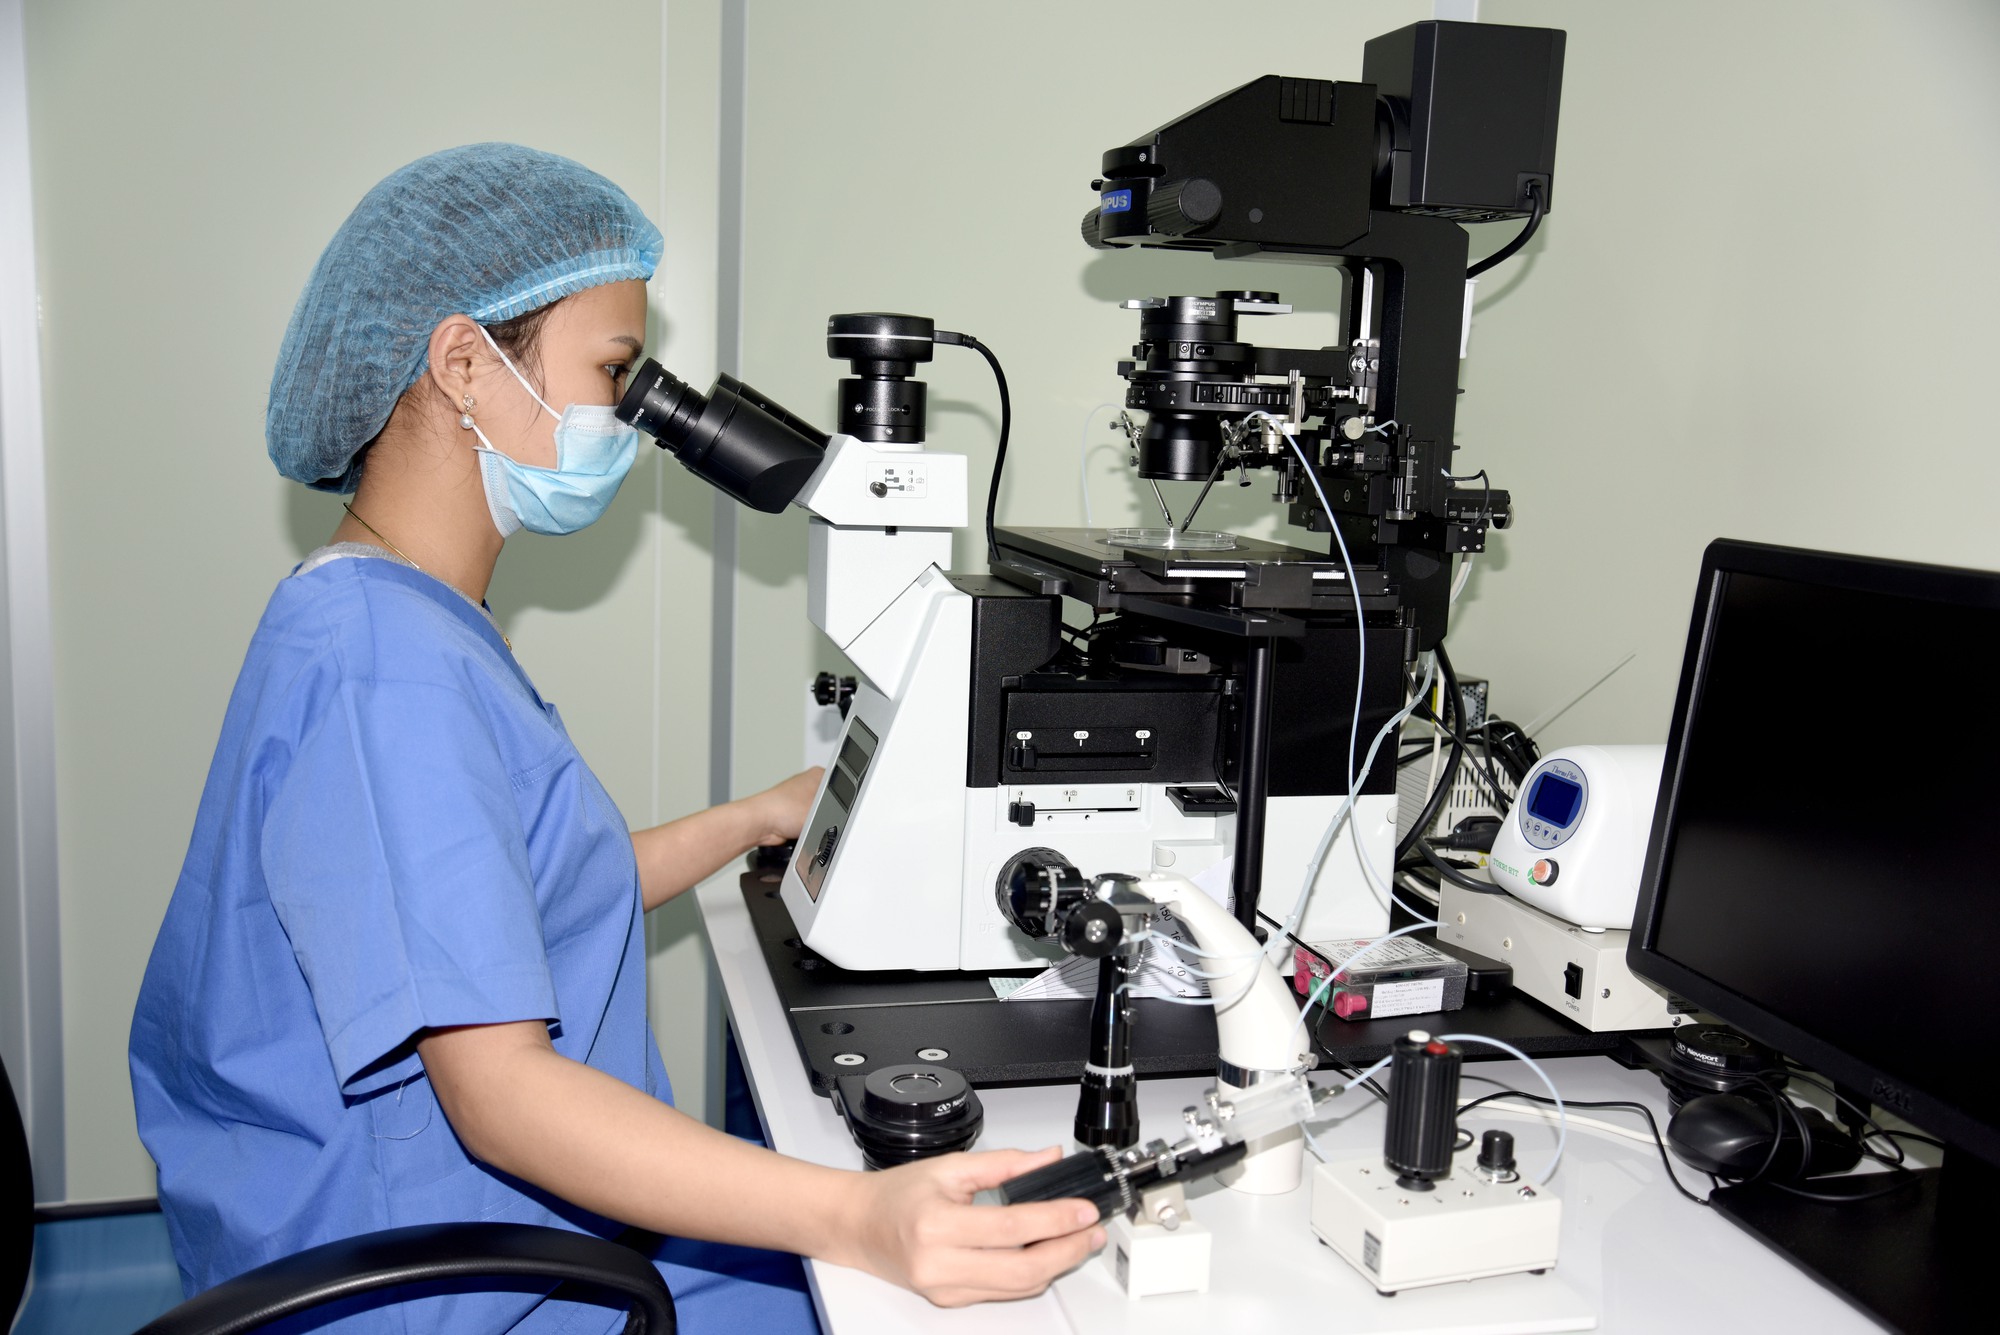 Nghệ An sớm trở thành trung tâm y tế khu vực Bắc Trung Bộ-2